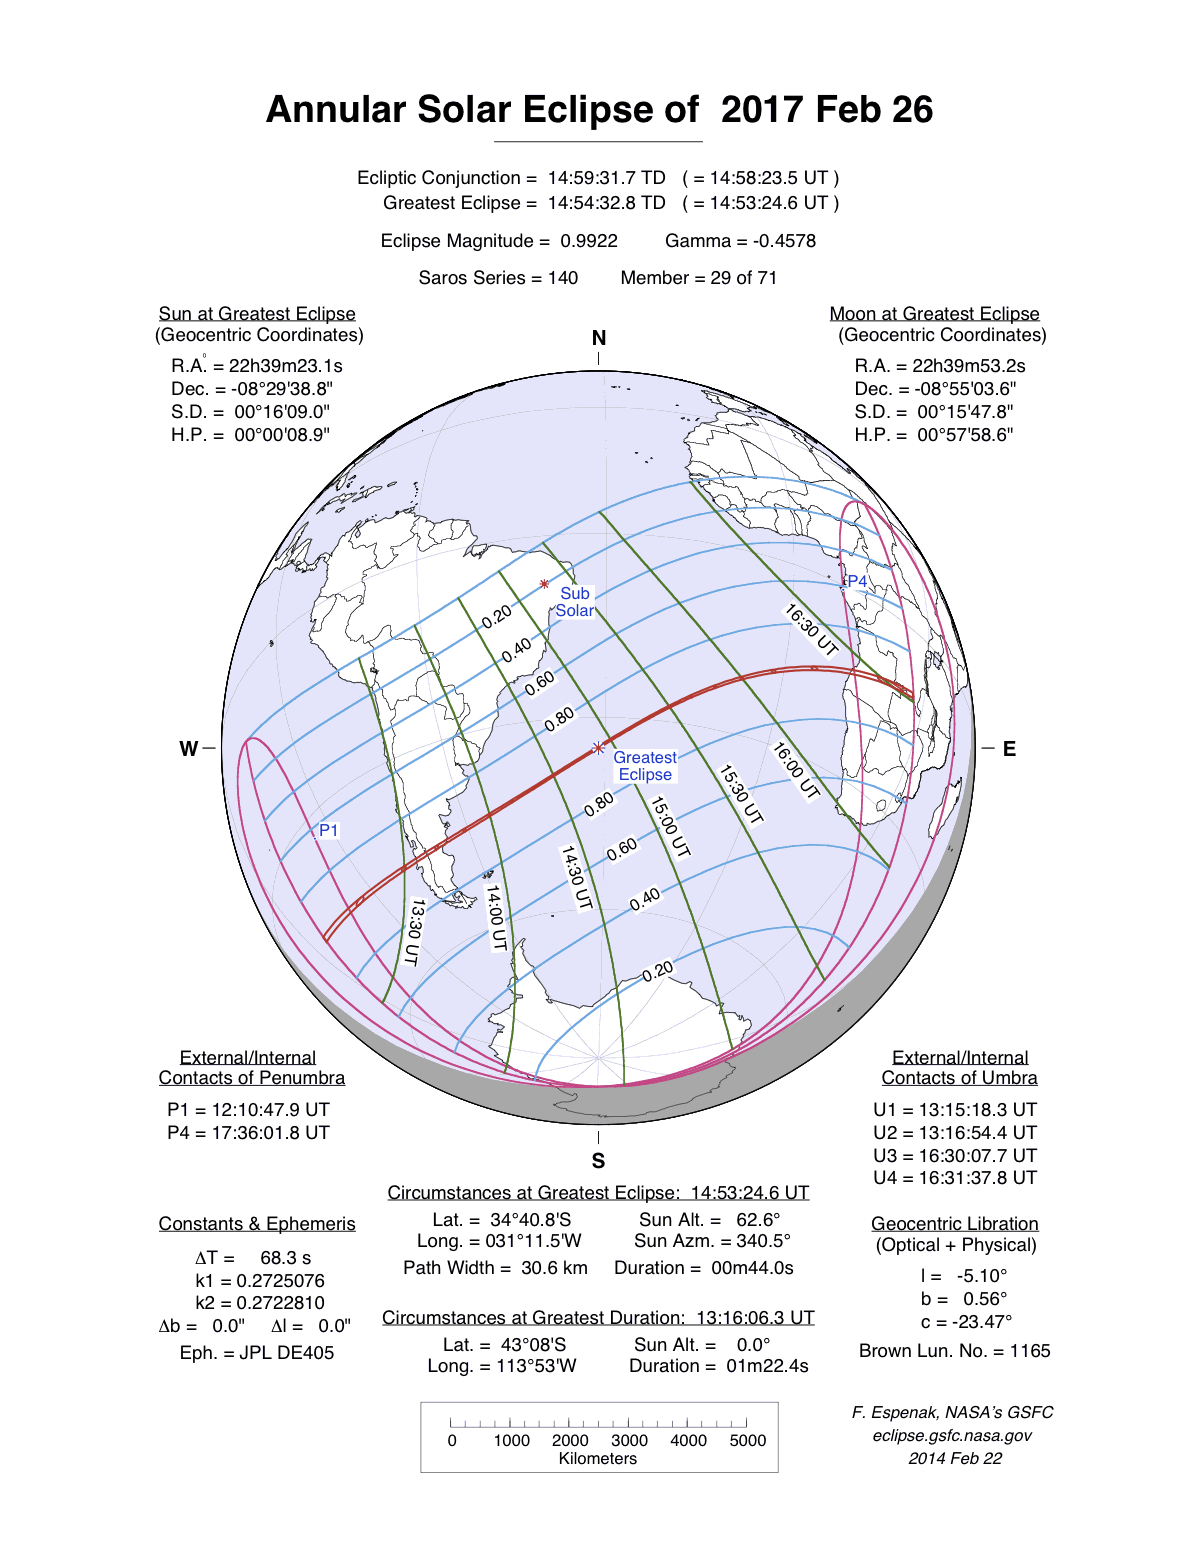 Verlauf der Ringförmigen Sonnenfinsternis am 26.02.2017